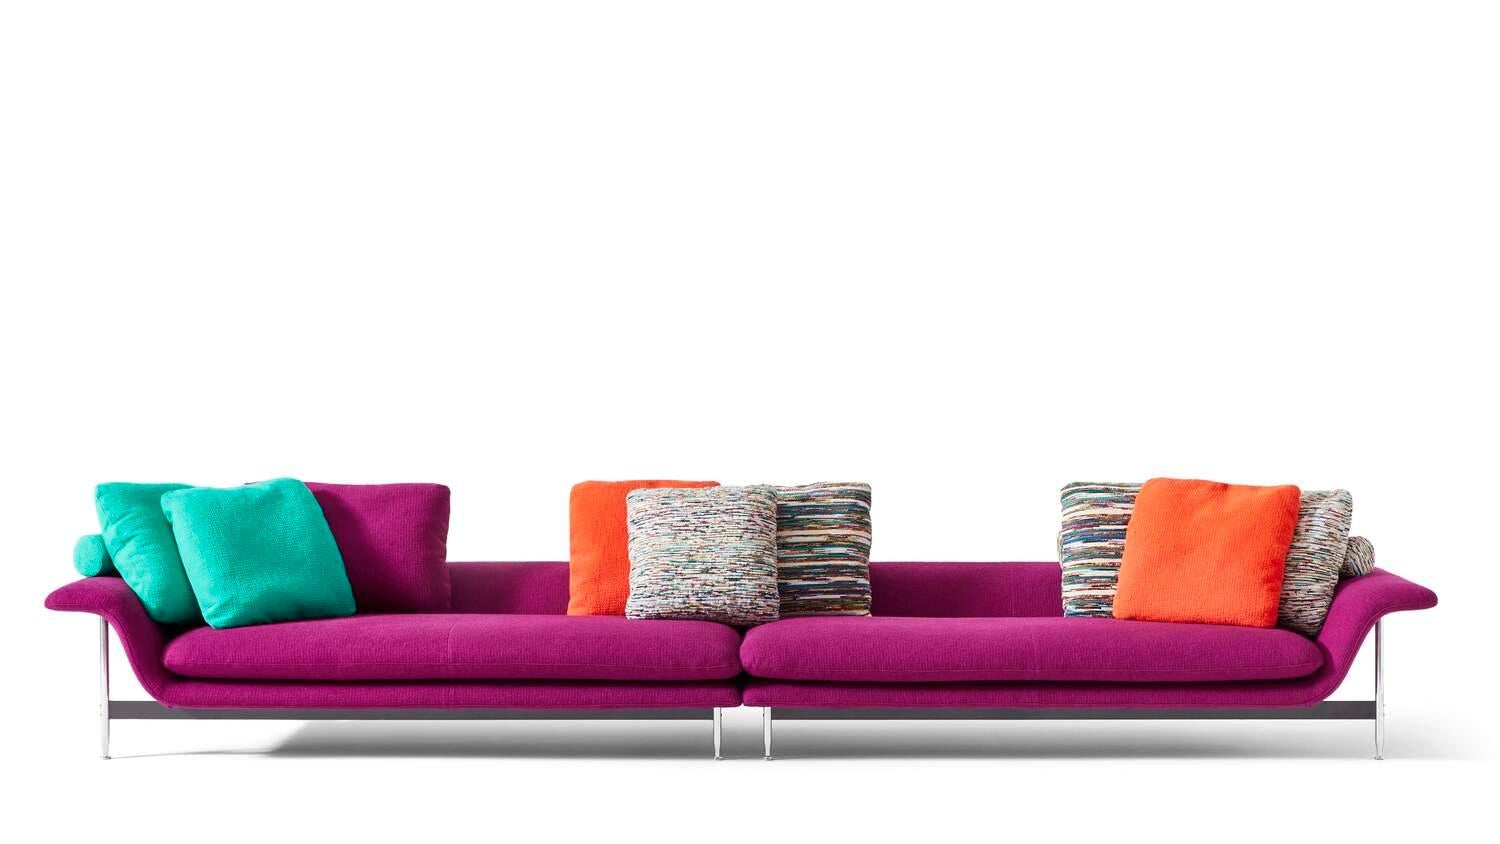 Antonio's Esosoft-Sofa
Hergestellt von Cassina in Itlay

Ein Wohnraumsystem, das die häusliche Landschaft auf fließende und flexible Weise definiert. Dies ist Esosoft ? das erste Projekt von Antonio Citterio für Cassina ? ein modulares Sofa, das